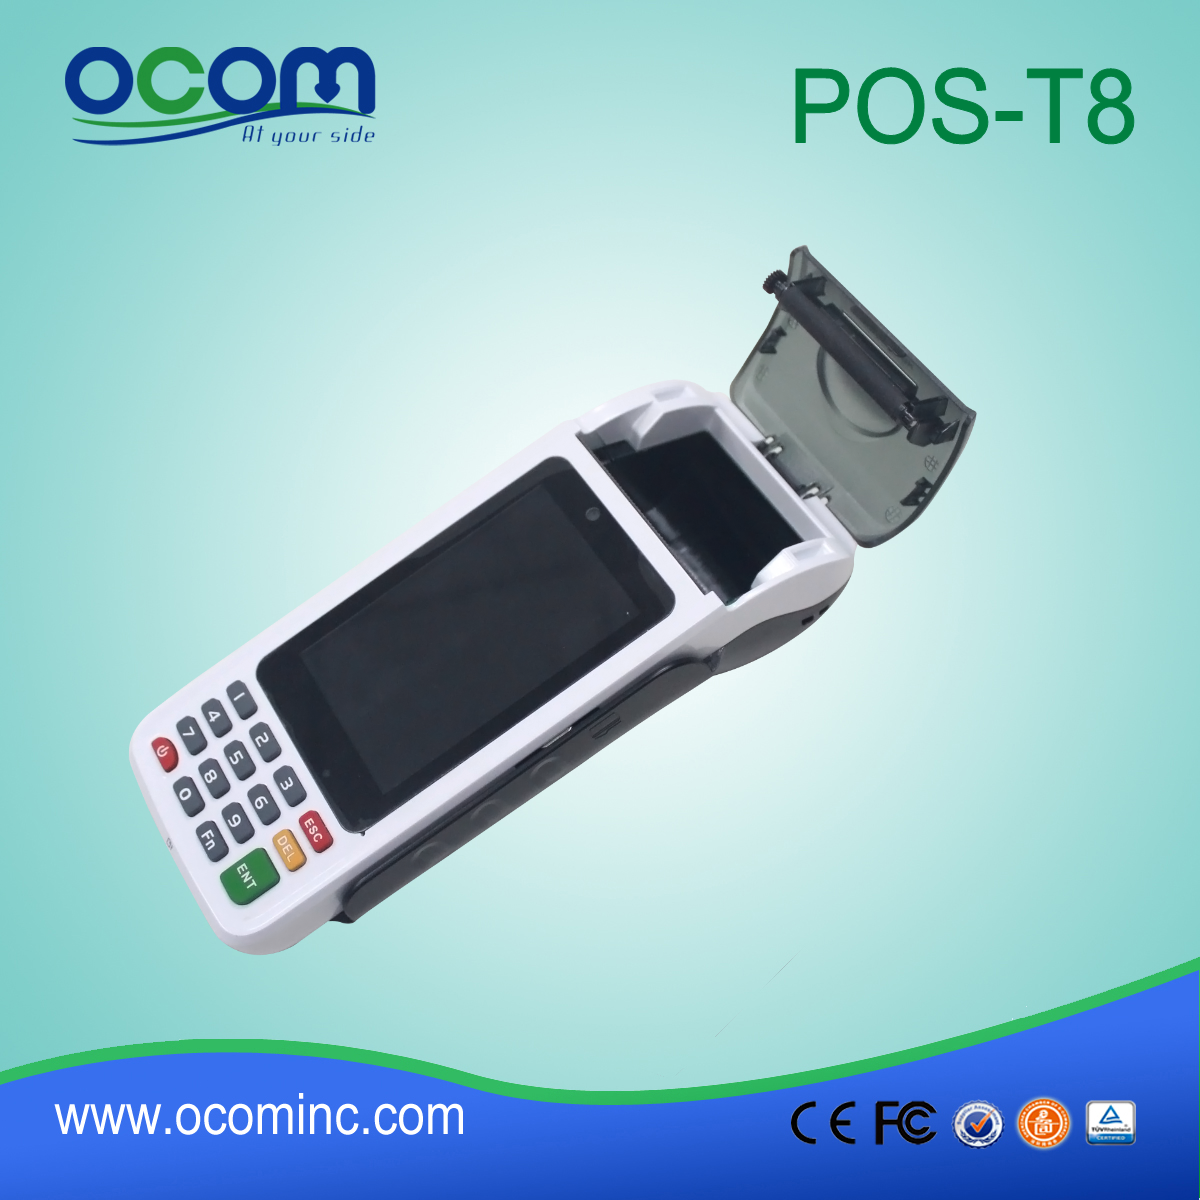 China Pos Terminal Manufacturer/Portable Terminal/Android Pos Terminal  POS-T8